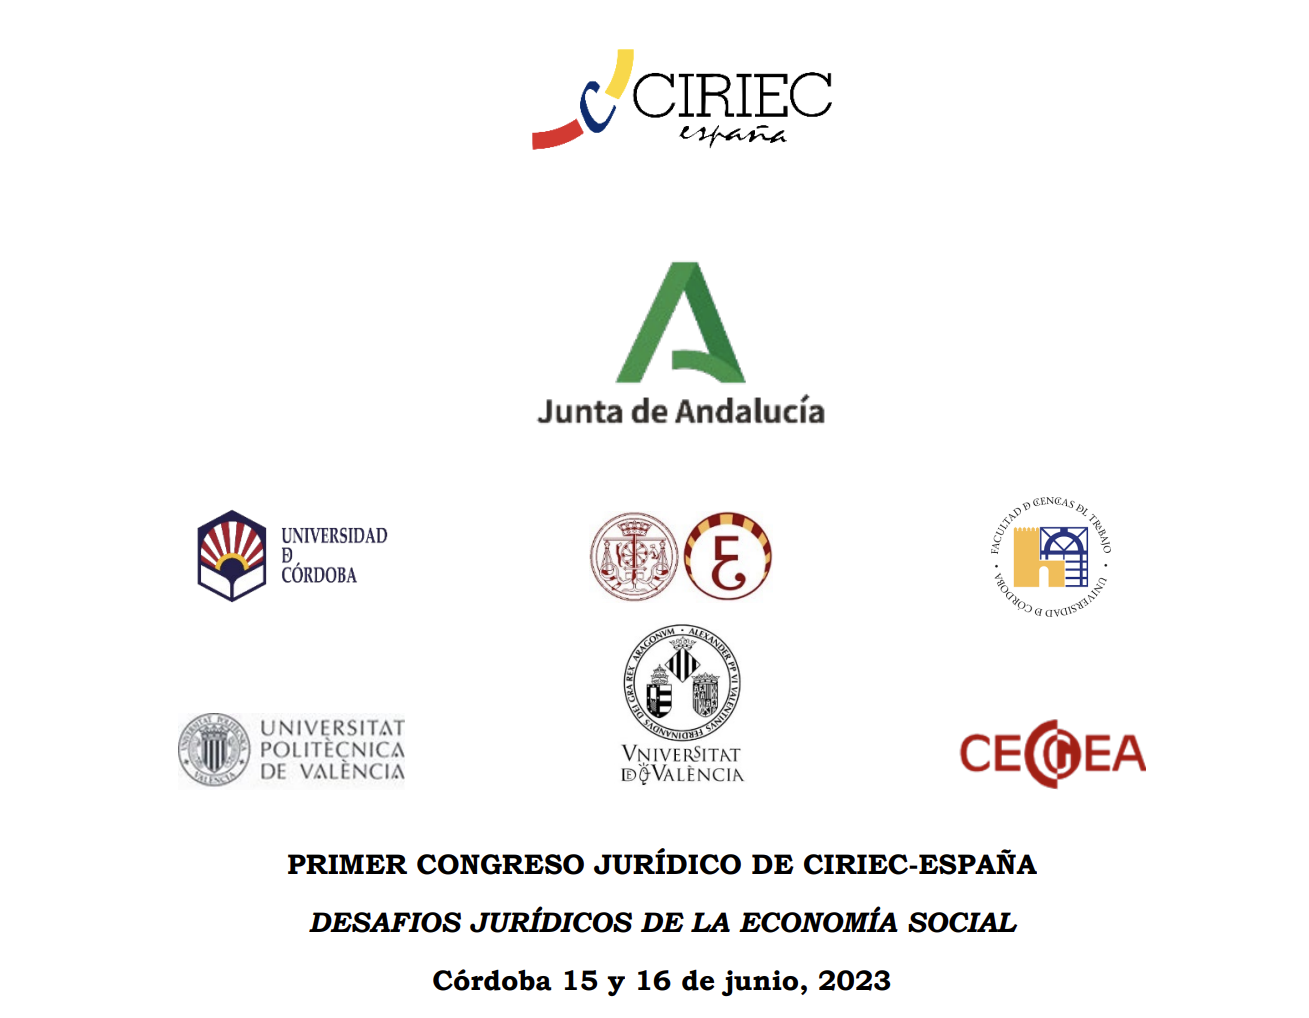 Desafíos jurídicos de la economía social, Córdoba junio